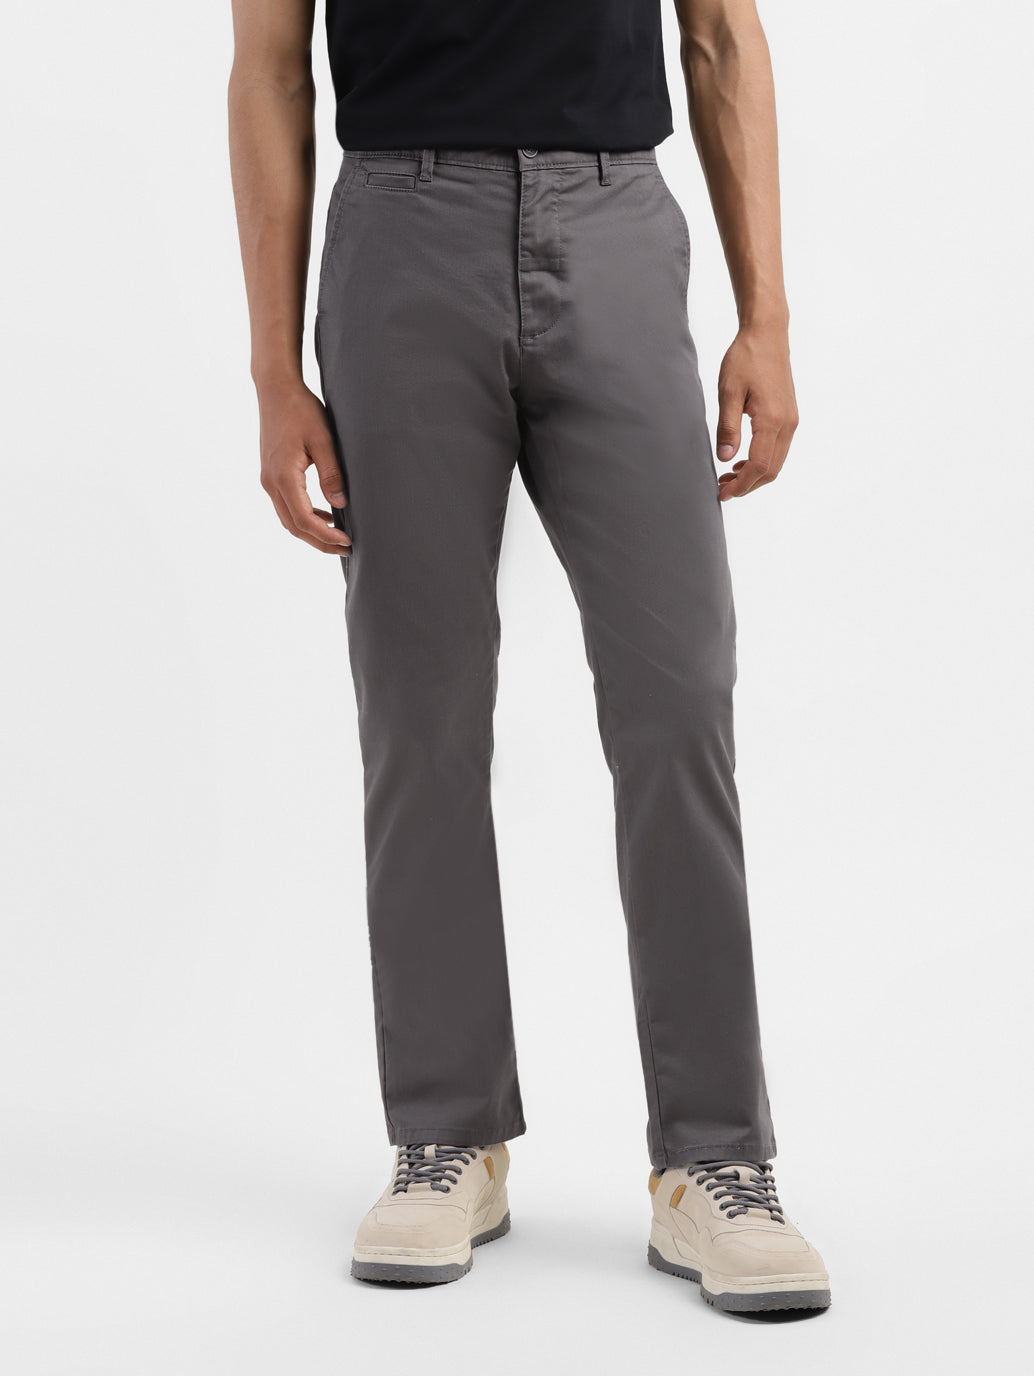 Men's Men's Grey Slim Fit Trousers